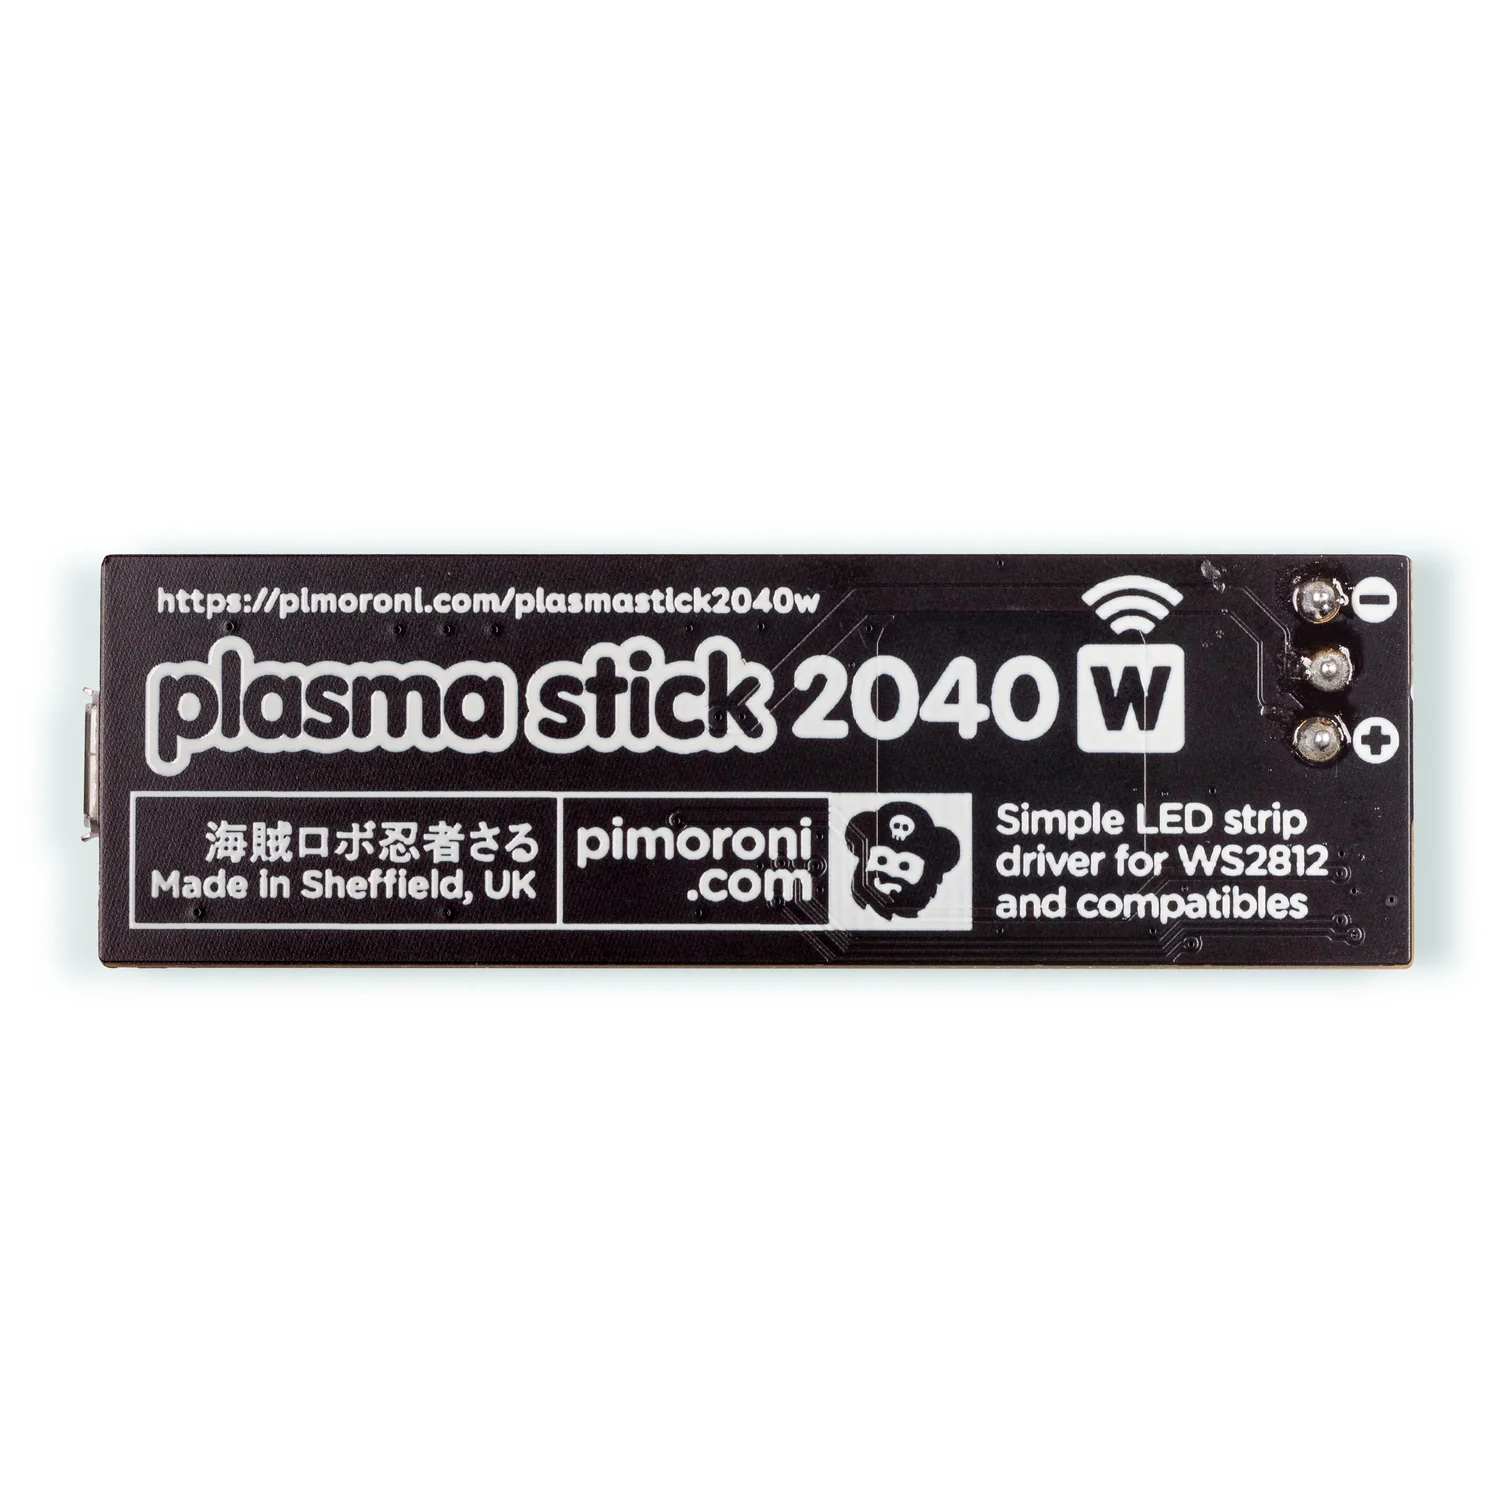 plasma-stick-2040w-4_843cacbe-31a2-46e9-8195-fa36ce07ff84_1500x1500.jpg